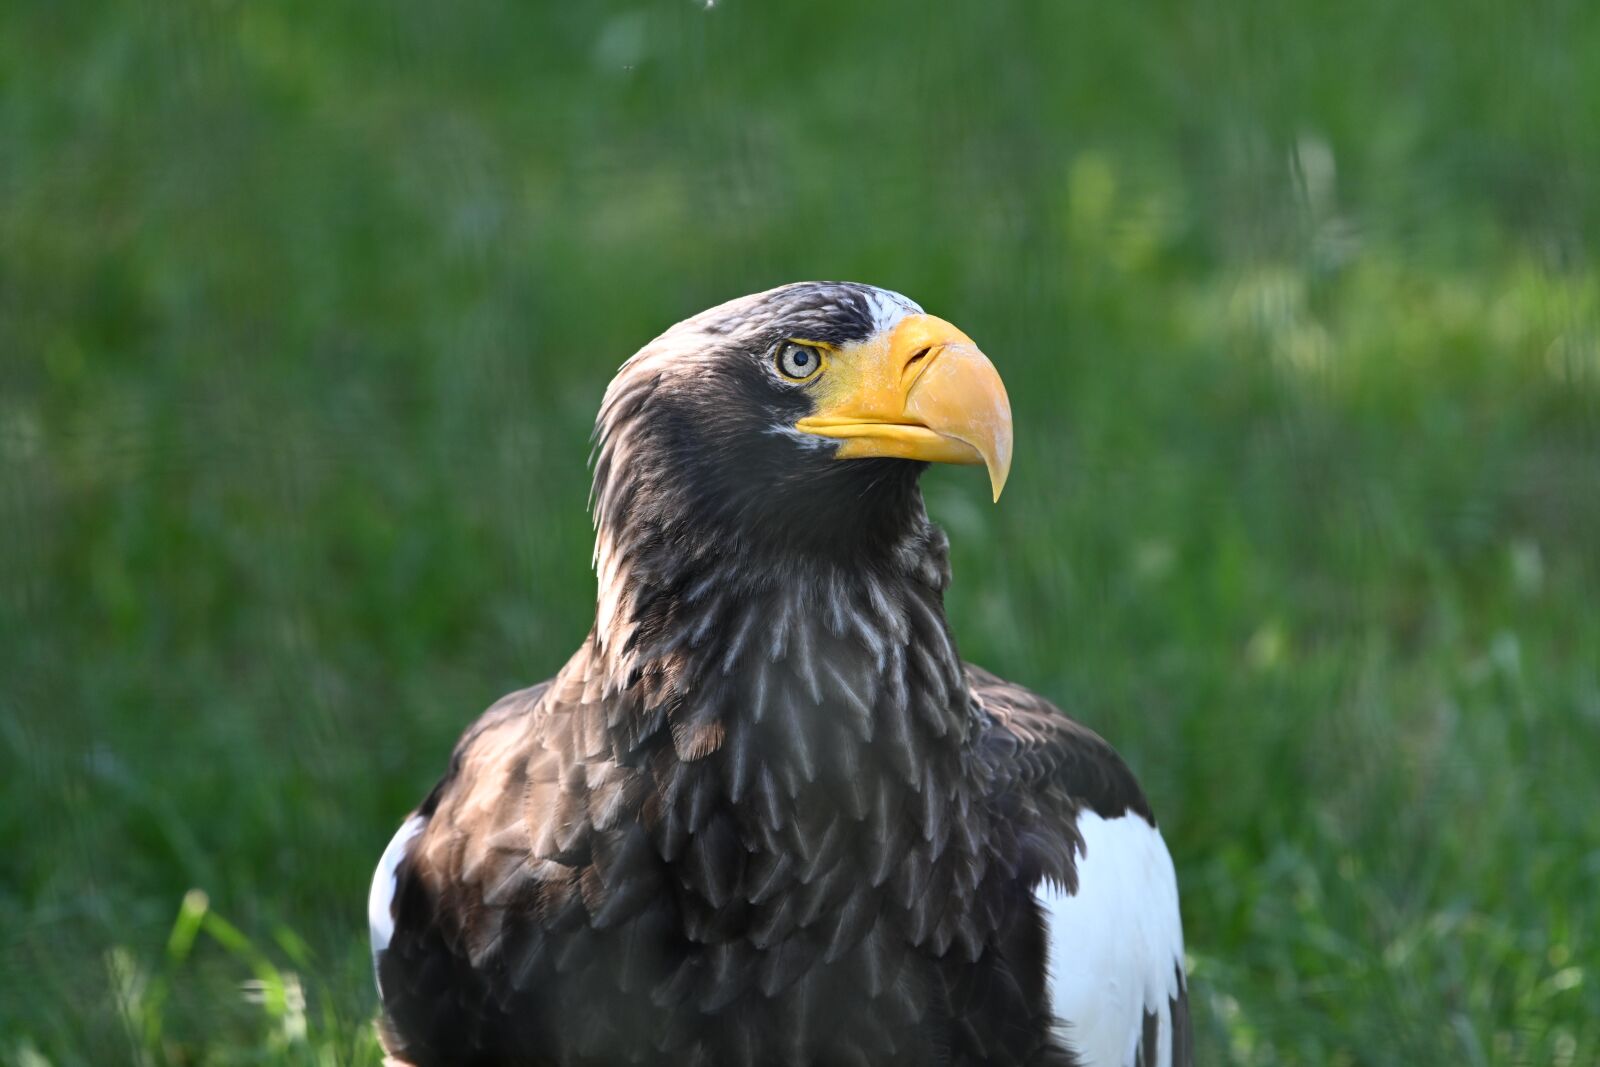 Nikon Z7 sample photo. White tailed eagle, bird photography